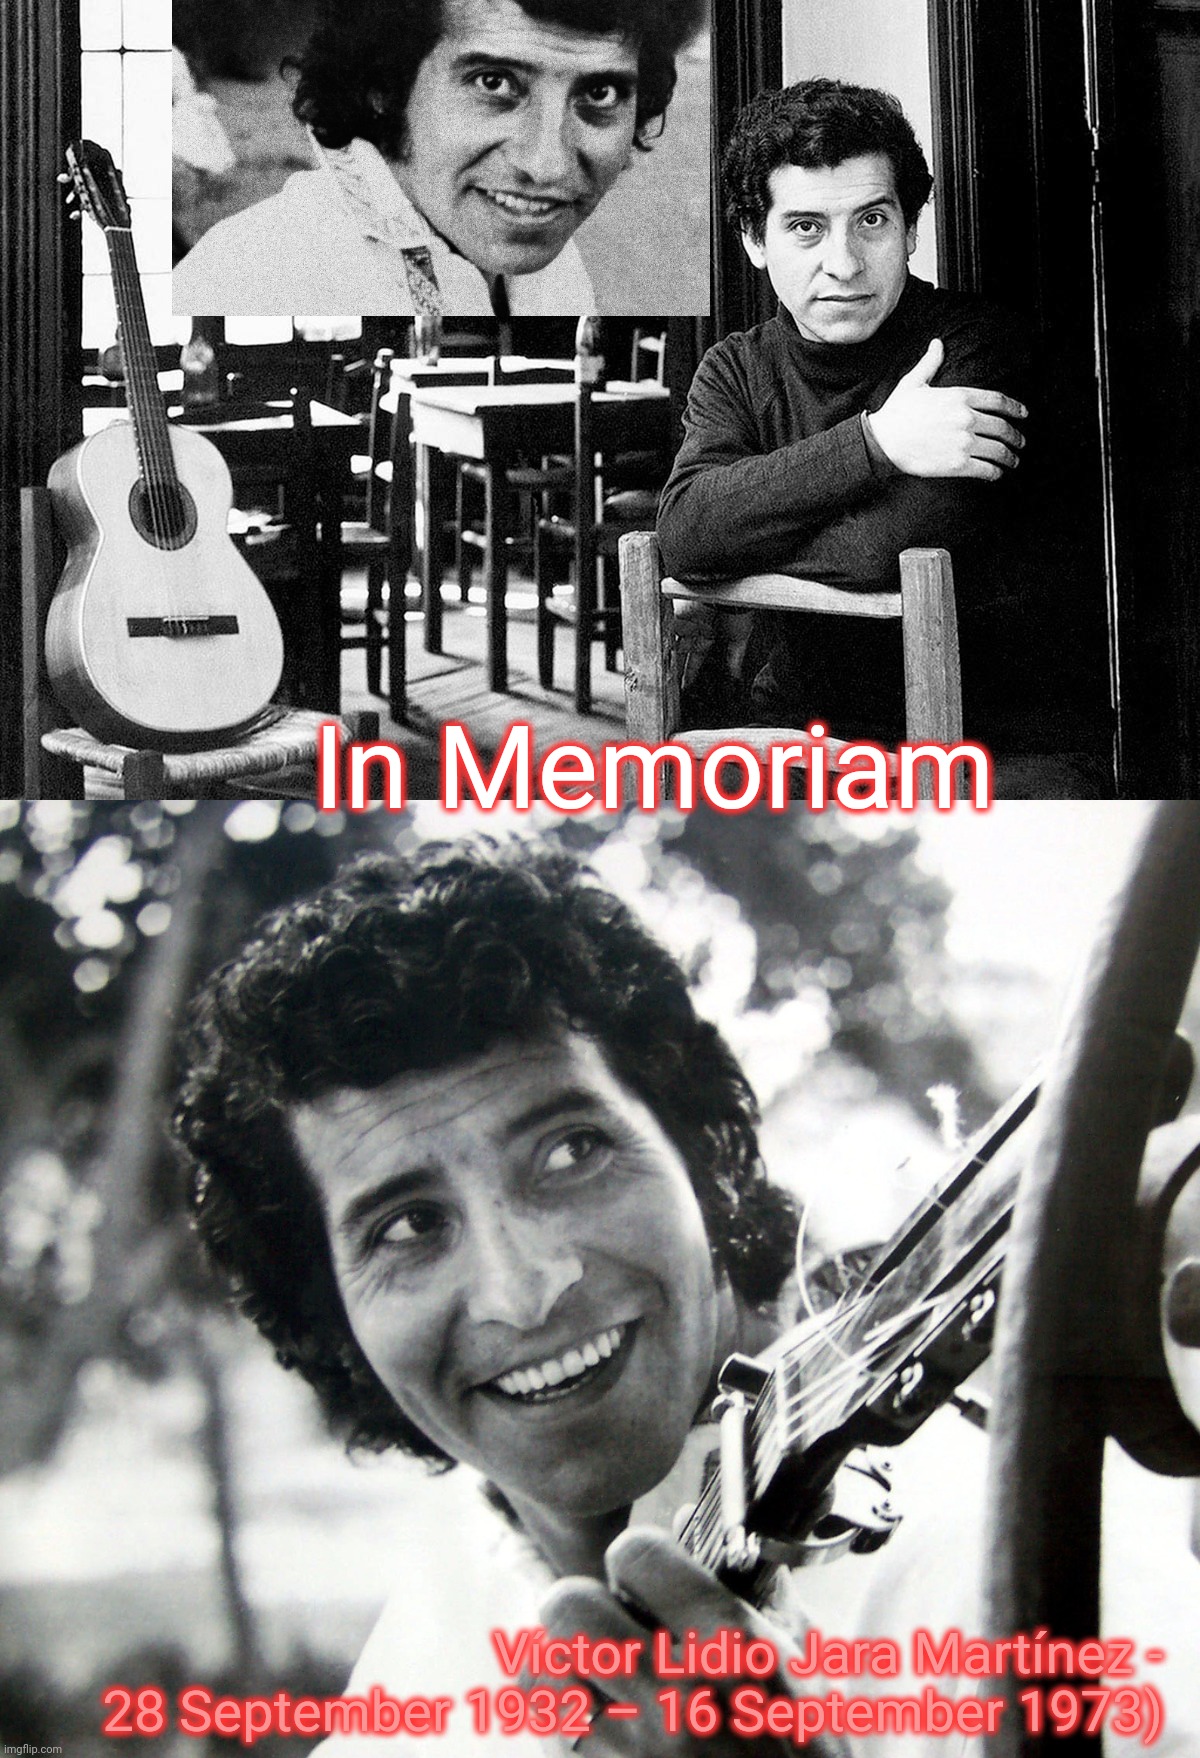 In Memoriam Víctor Lidio Jara Martínez - 28 September 1932 – 16 September 1973) | made w/ Imgflip meme maker